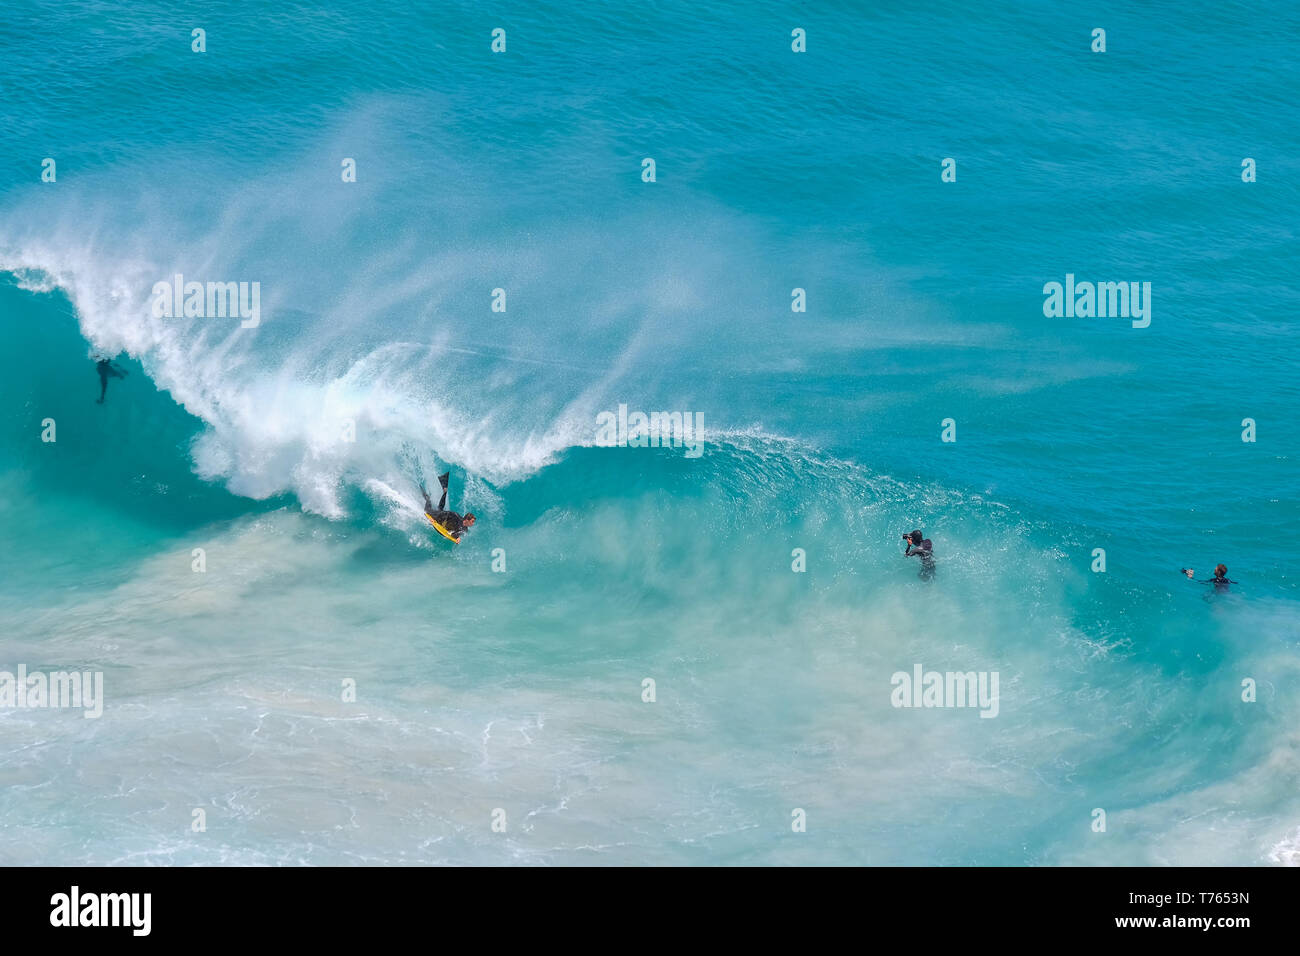 Un alto ángulo de visualización de personas body surfing en una ola de agua de color turquesa en Sudáfrica Foto de stock